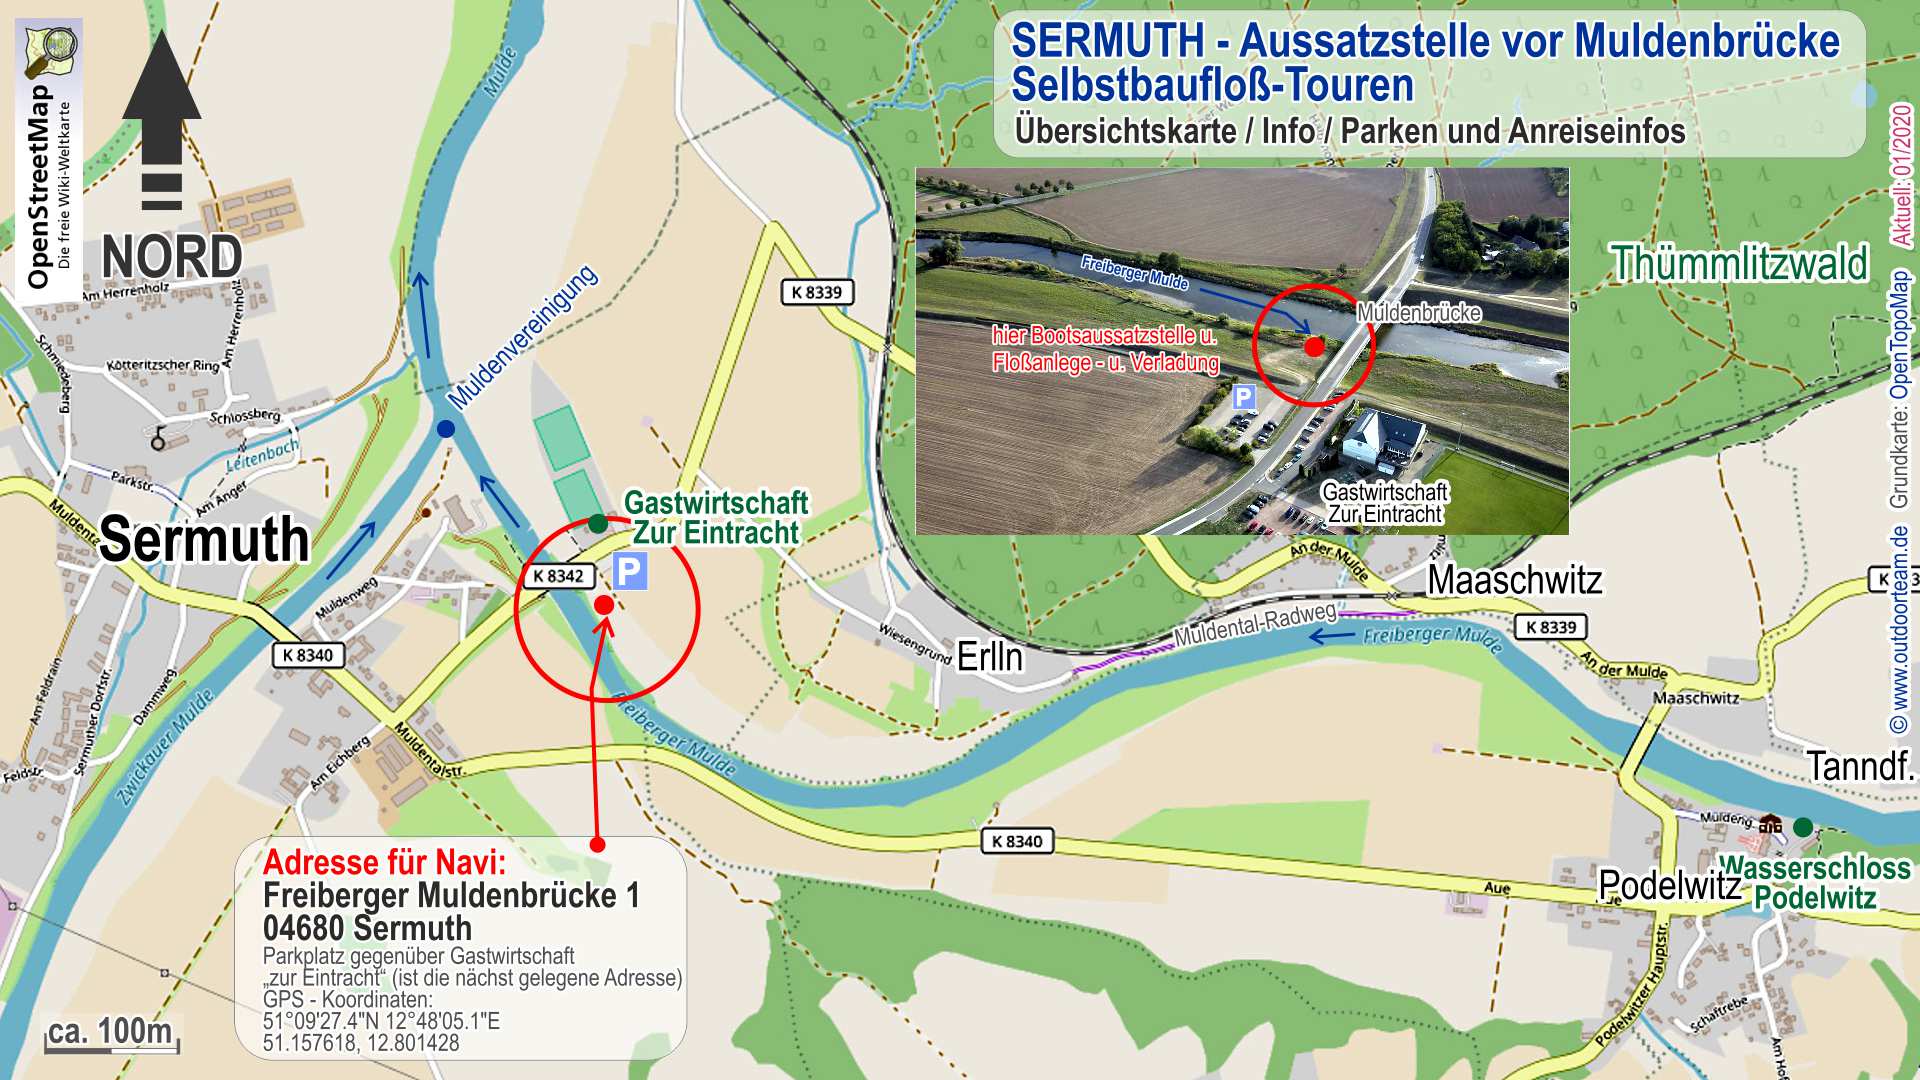 Sermuth - Tourende der Selbstbaufloßtour auf der Freiberger Mulde - Detailkarte bzw. genauer Ortsplan mit Navi-Adresse und Koordinaten